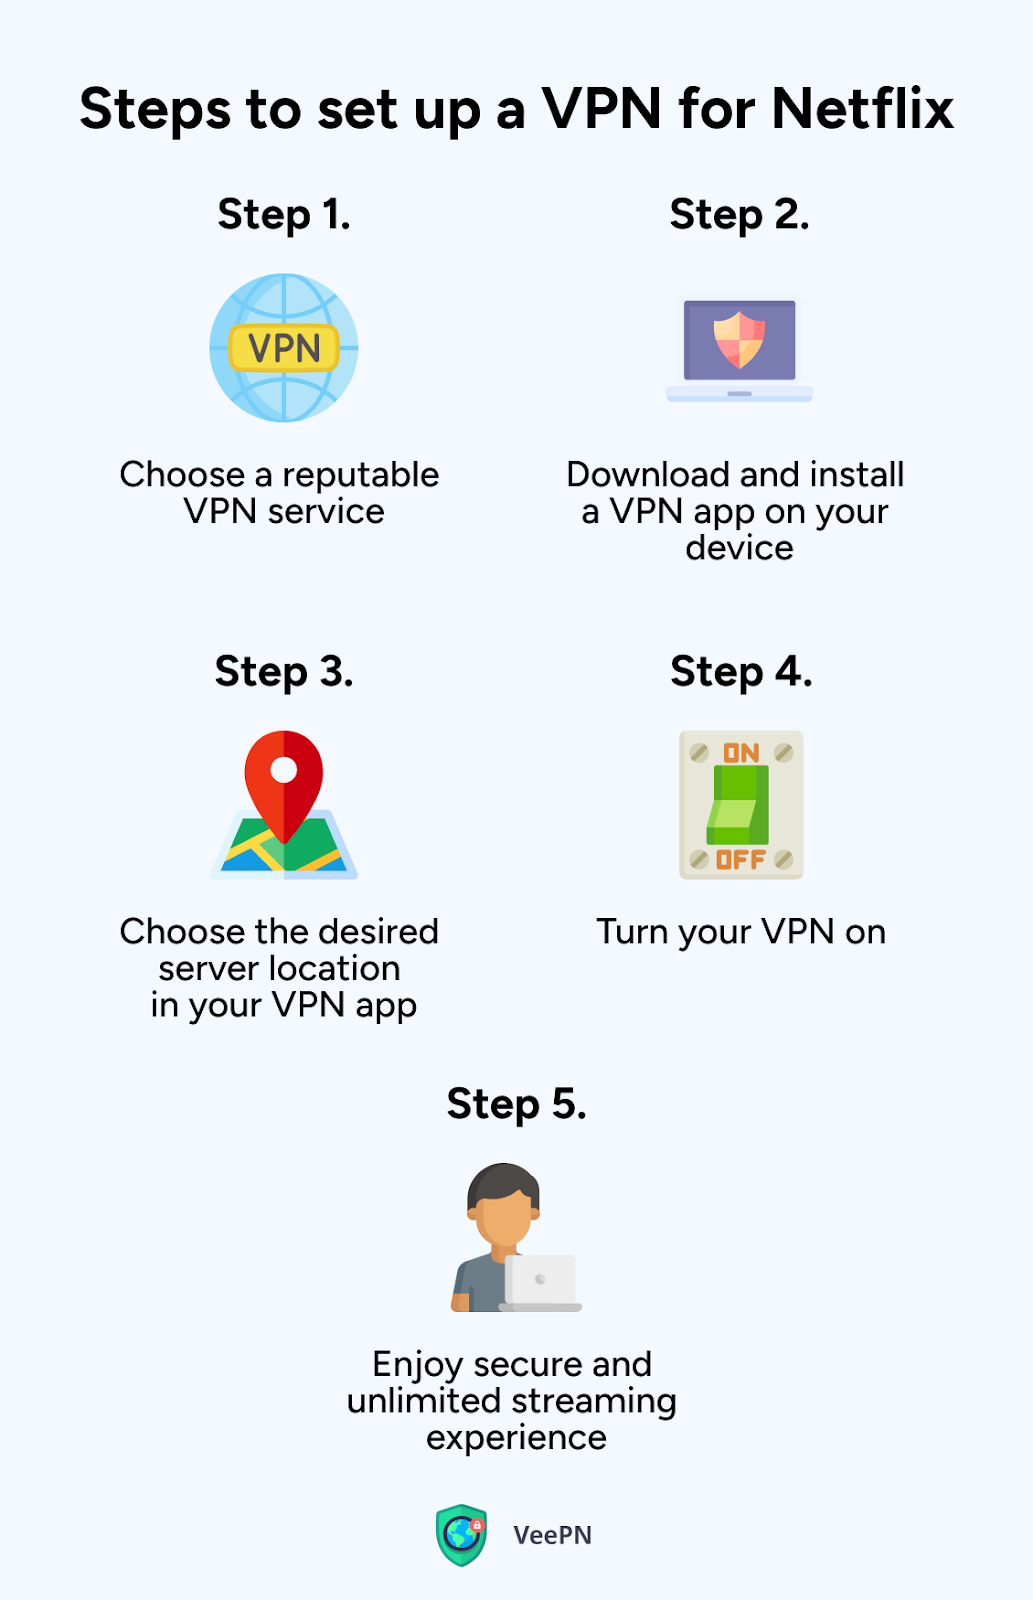 Steps to set up a VPN for Netflix